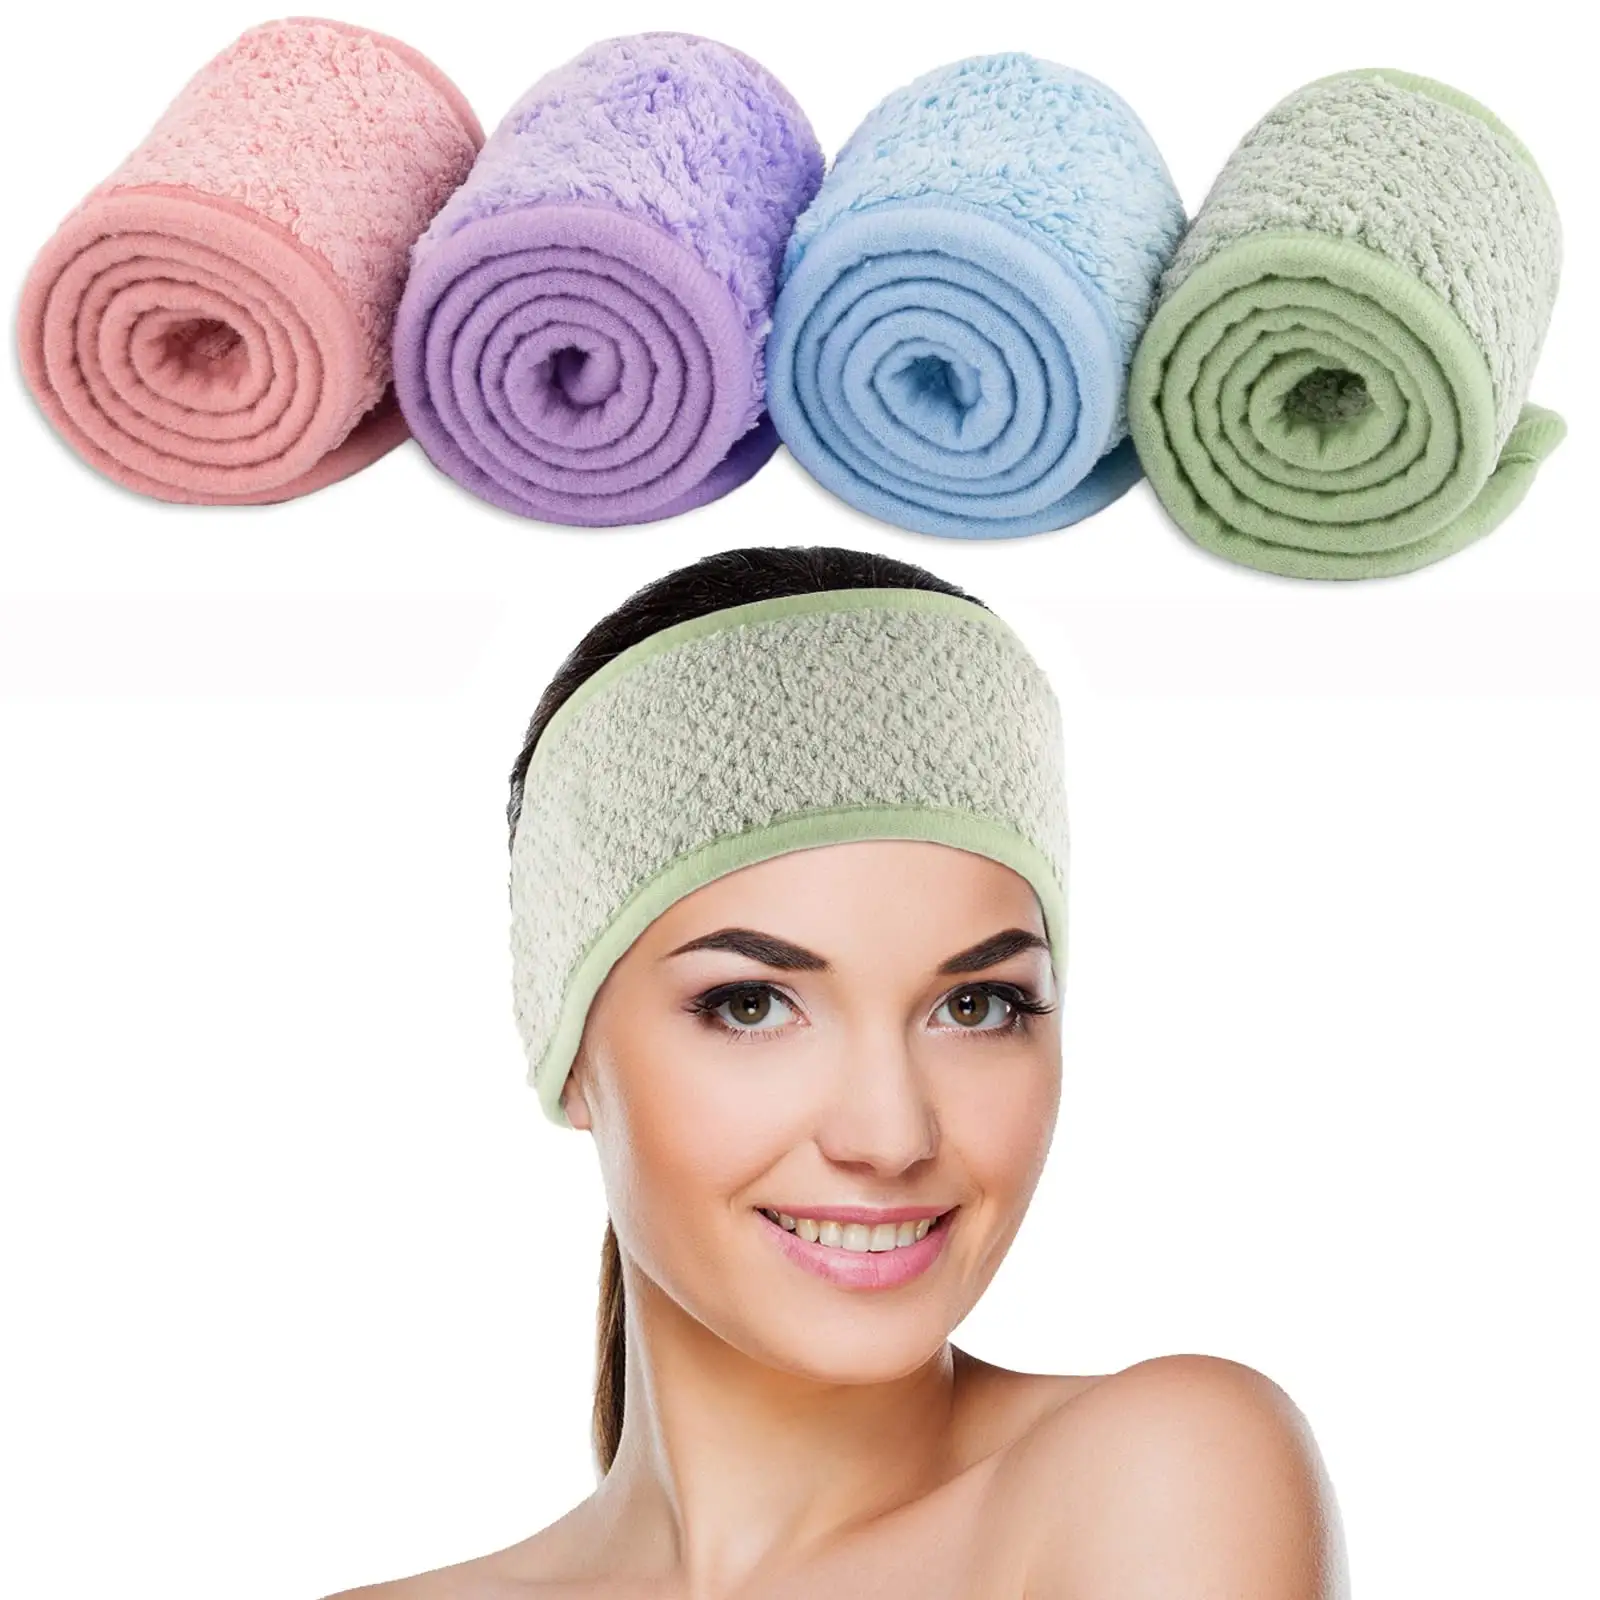 Diadema facial para spa, banda para el cabello de lana de Coral ajustable, banda para la cabeza de toalla suave para lavado de cara, deportes de Ducha